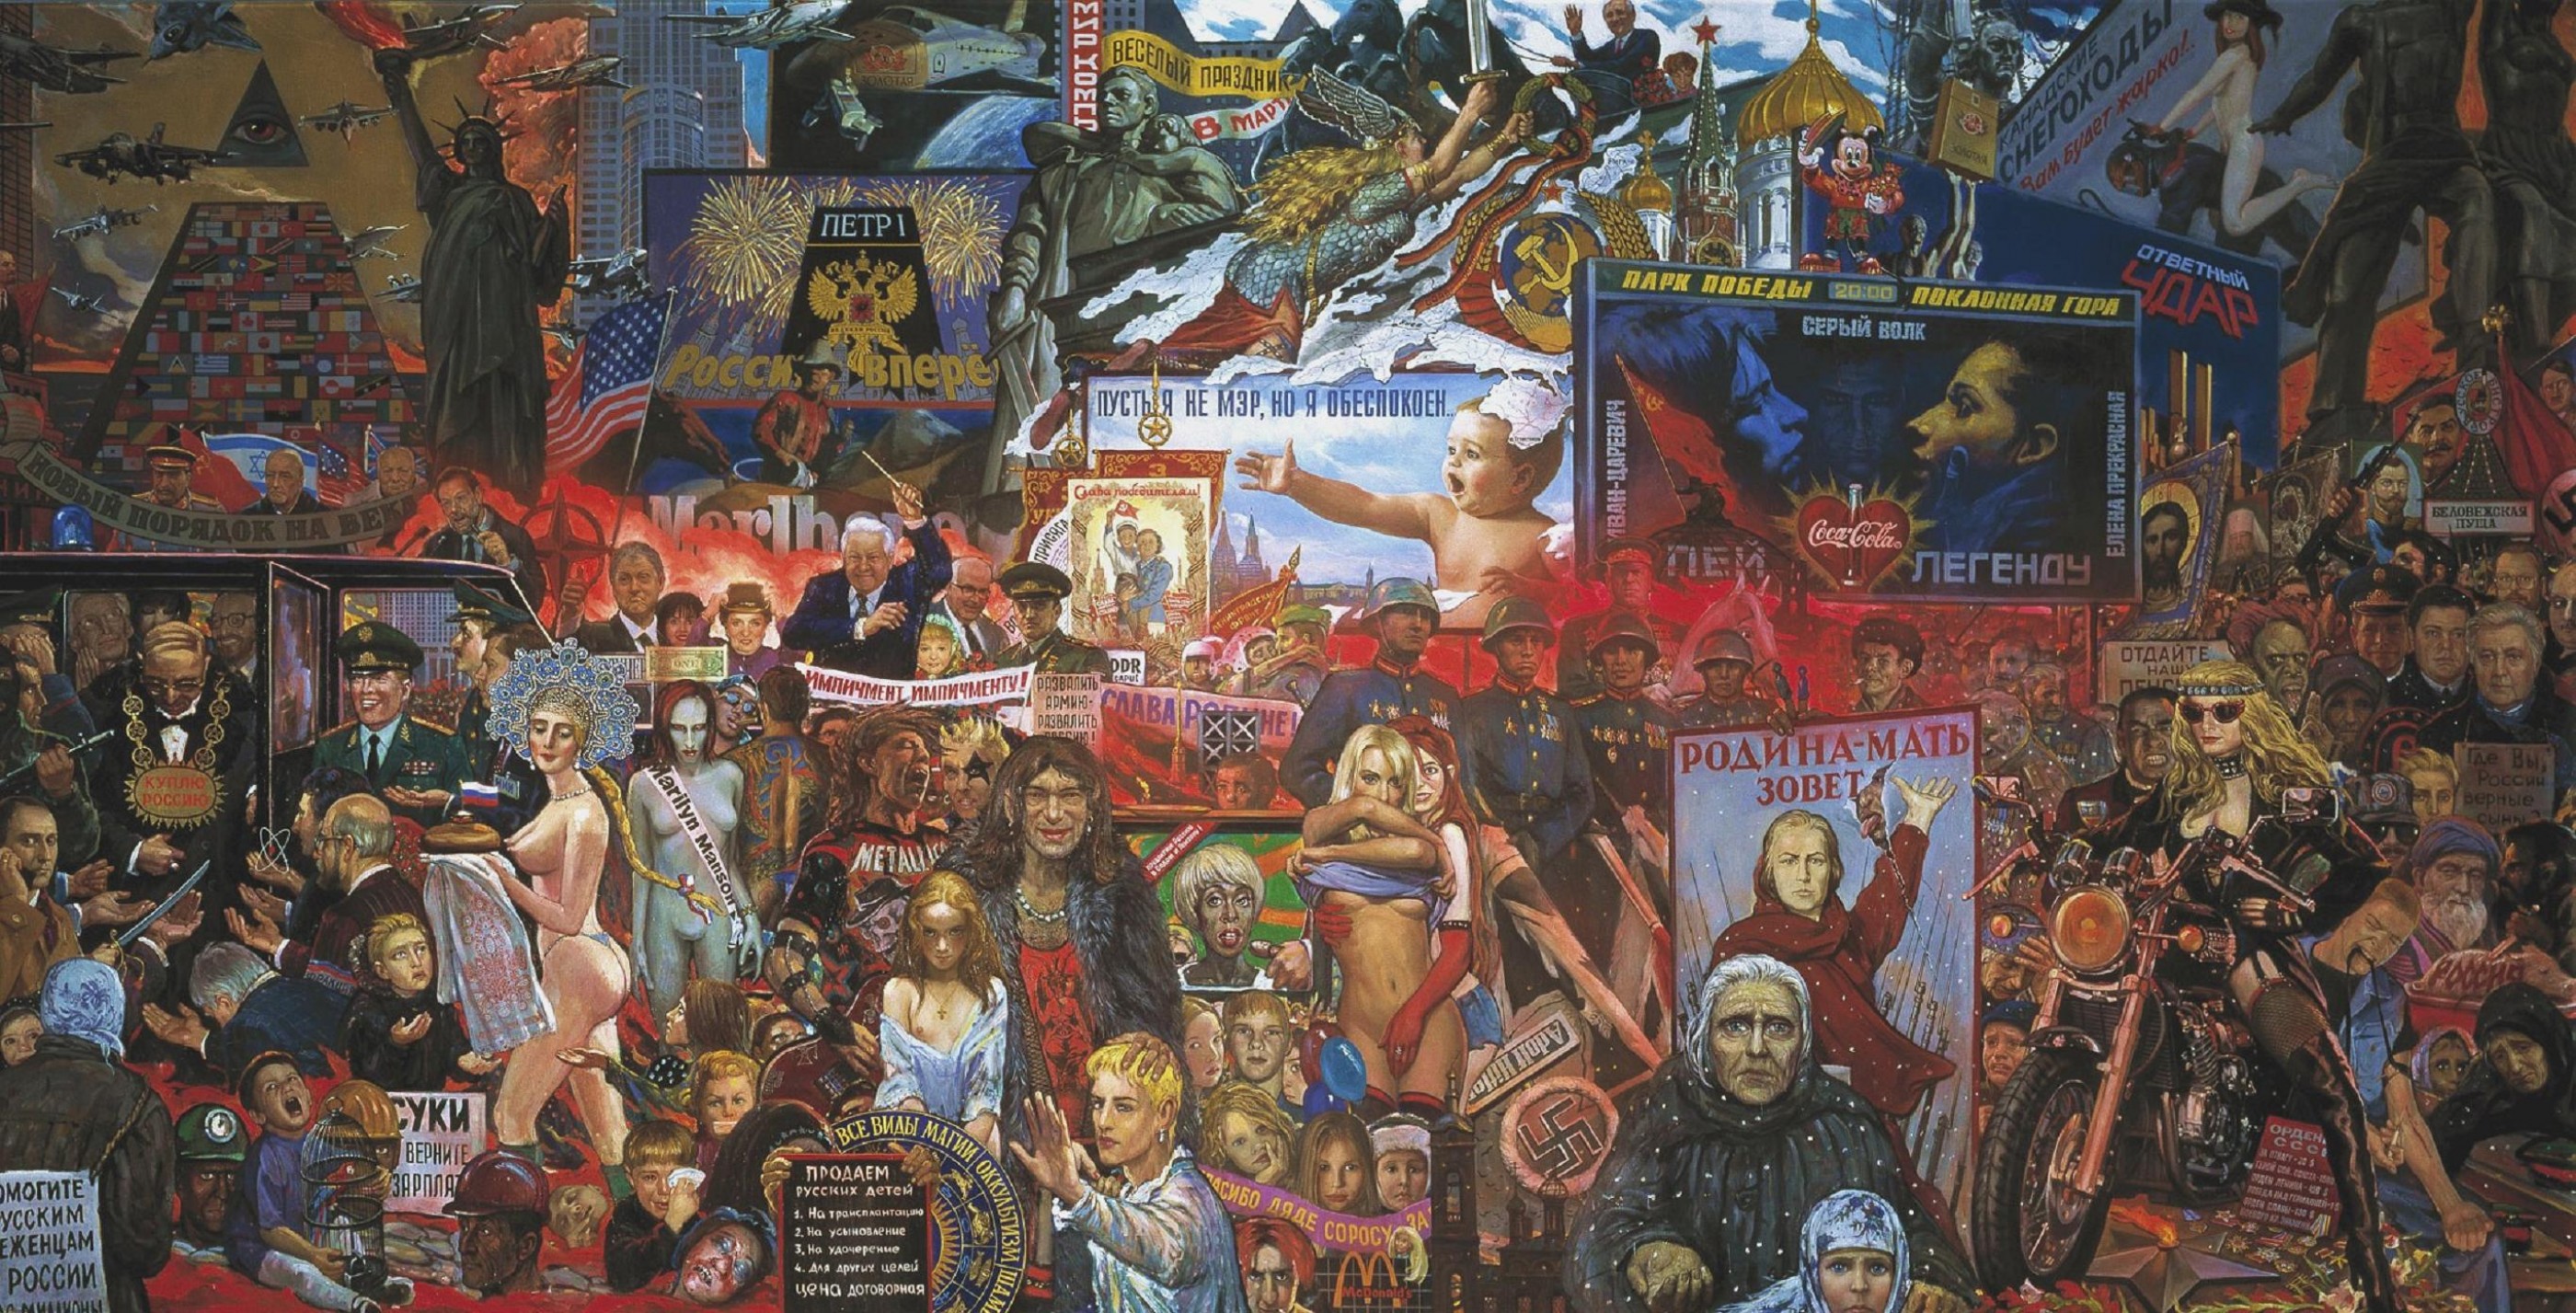 ilya-glazunov-the-market-of-our-democracy-1999-e1268332476558